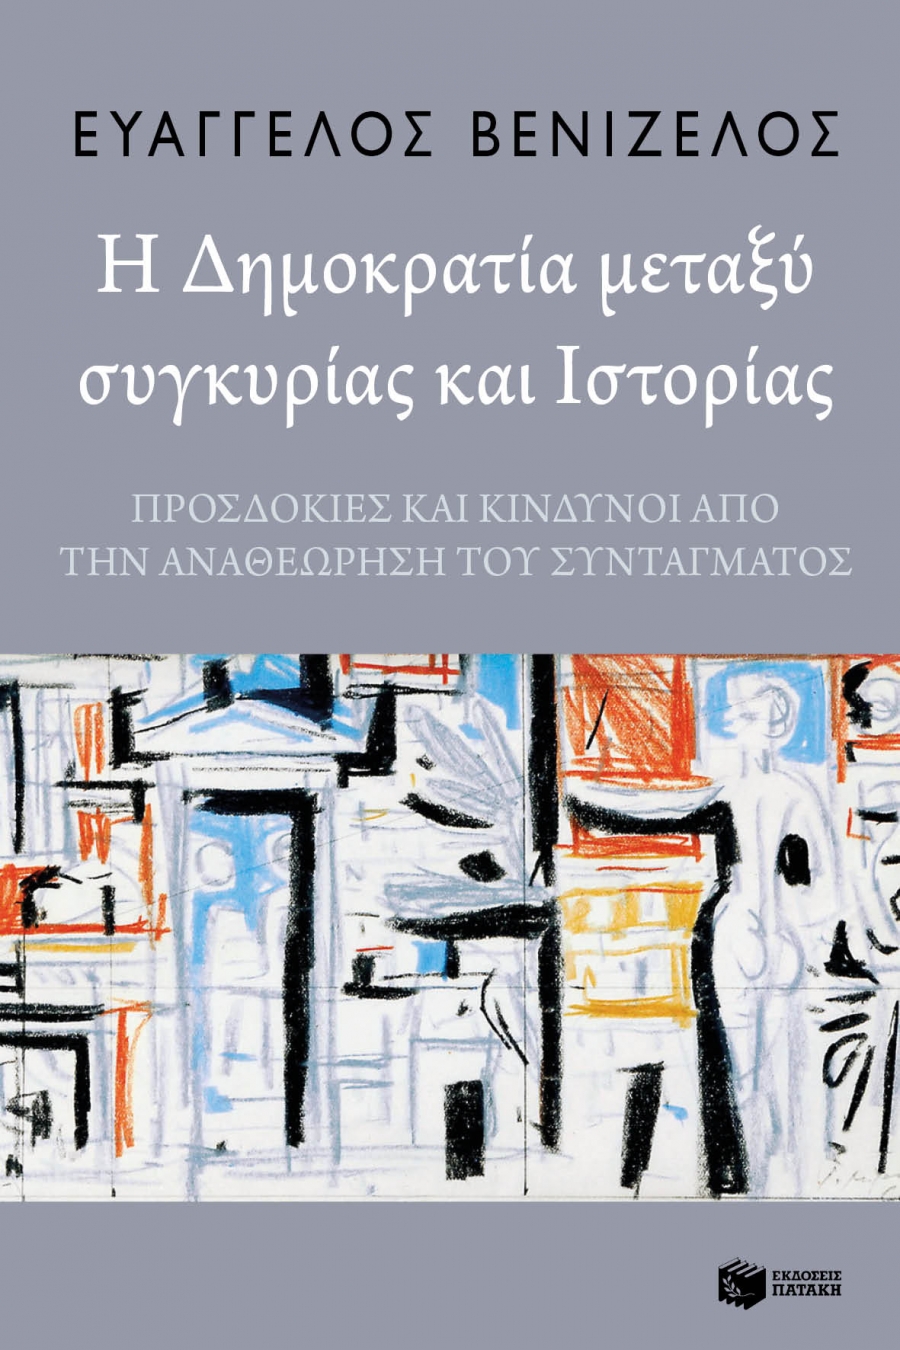 20.12.2018, Αθήνα: Παρουσίαση του νέου βιβλίου του Ευ. Βενιζέλου «Η Δημοκρατία μεταξύ συγκυρίας και Ιστορίας»